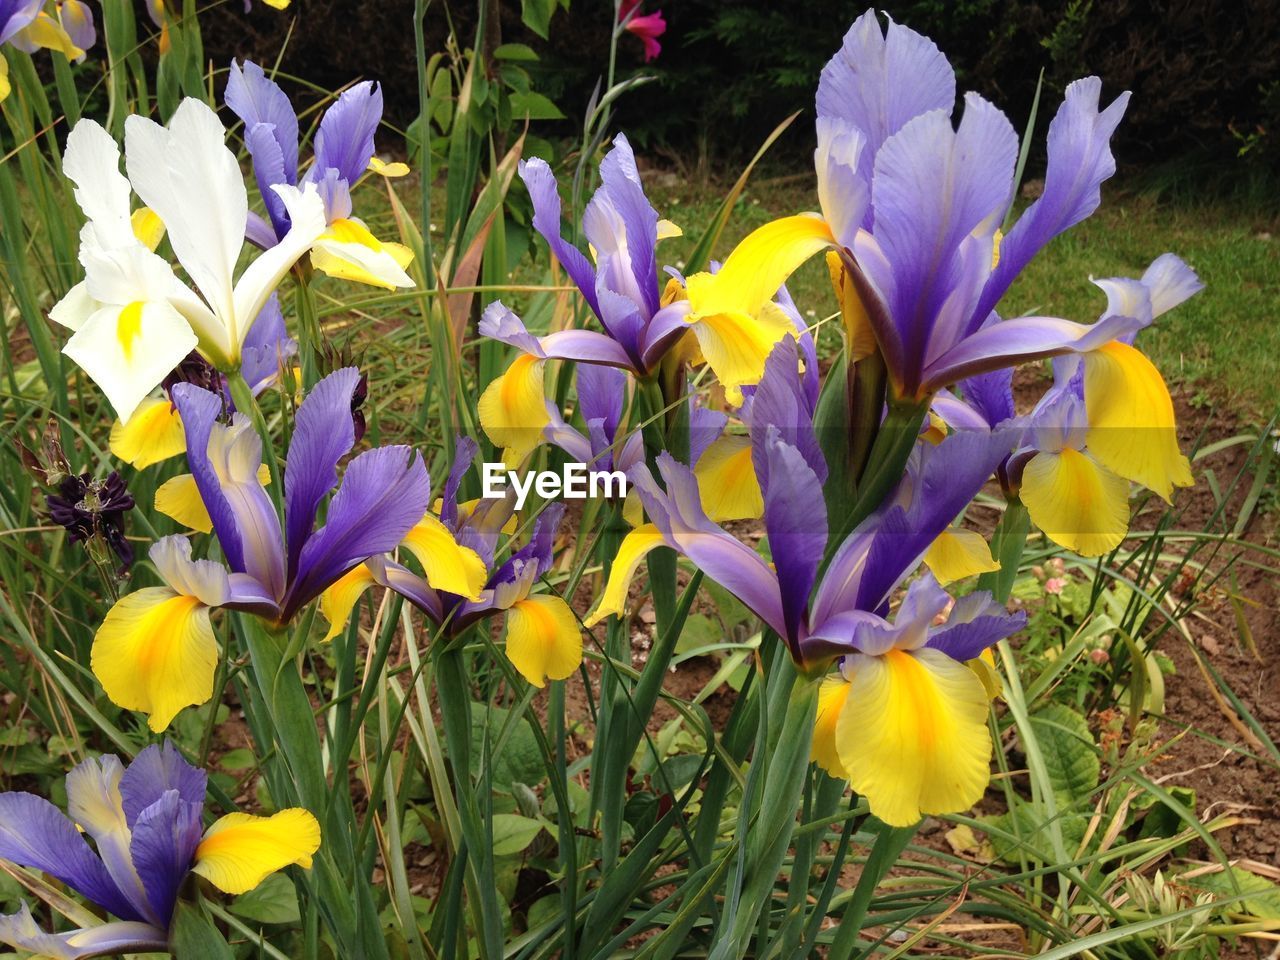 Iris flowers blooming in garden